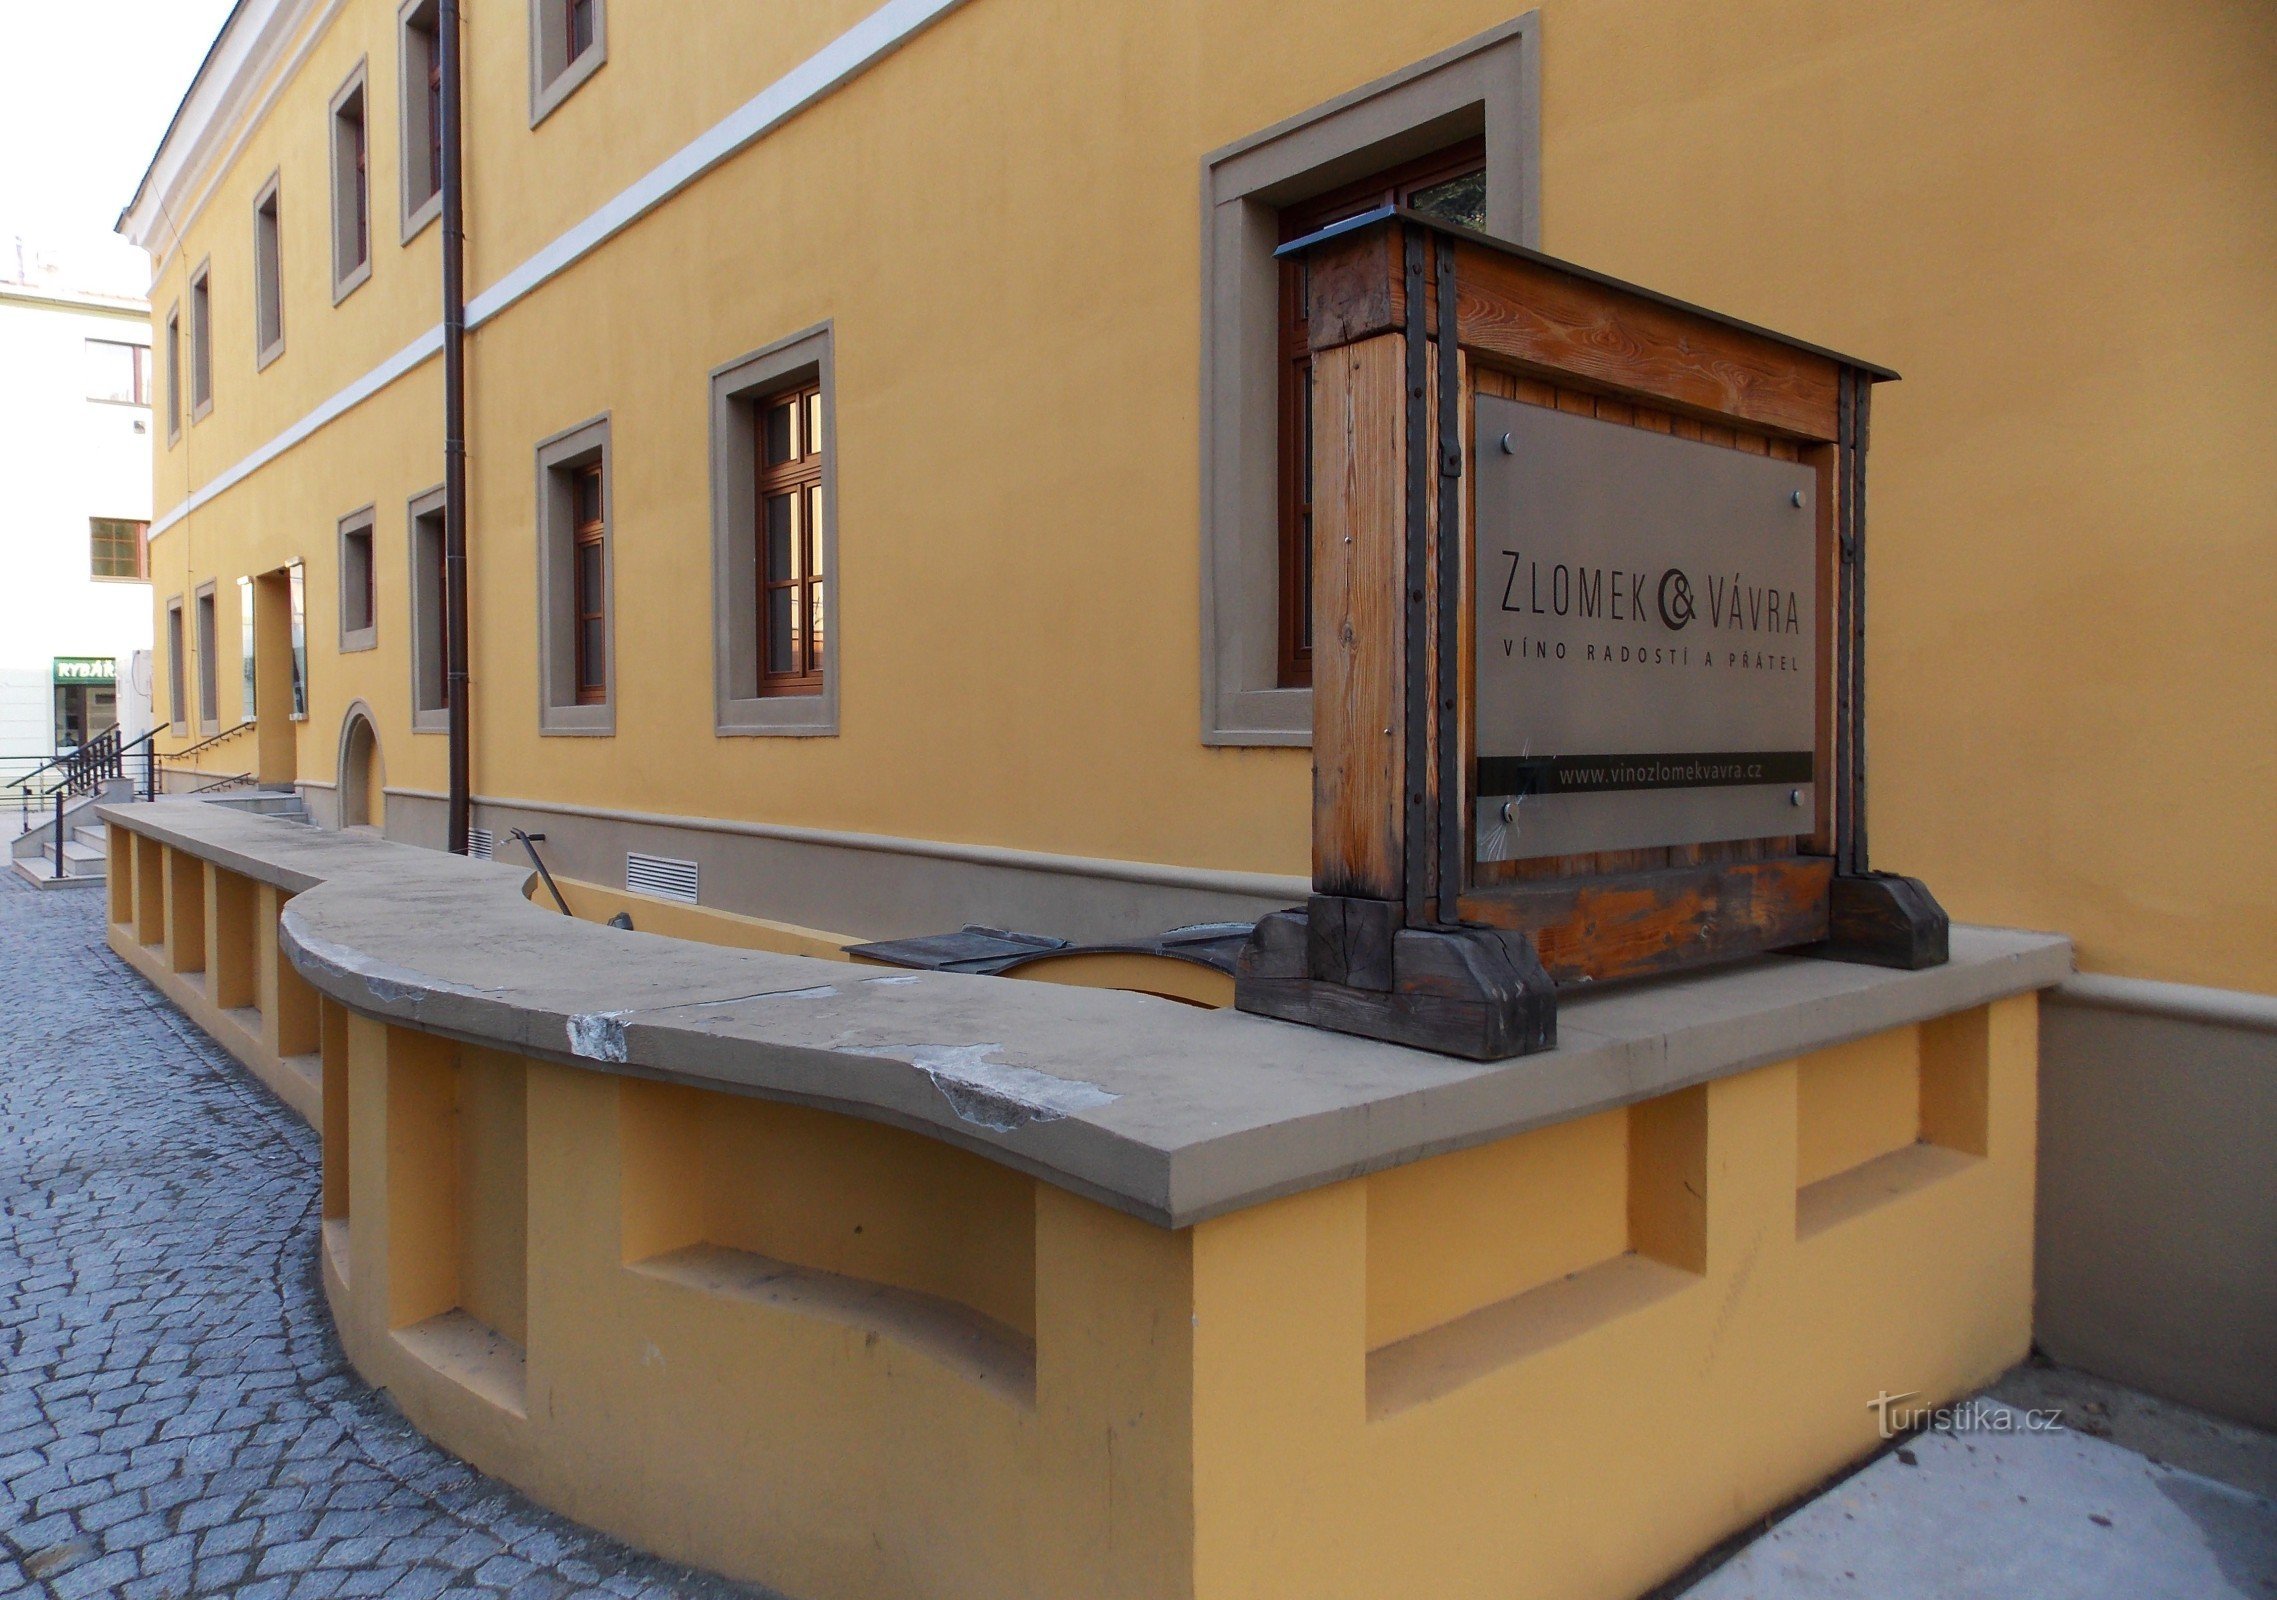 Galeria win słowackich w Uh. Hradiszti